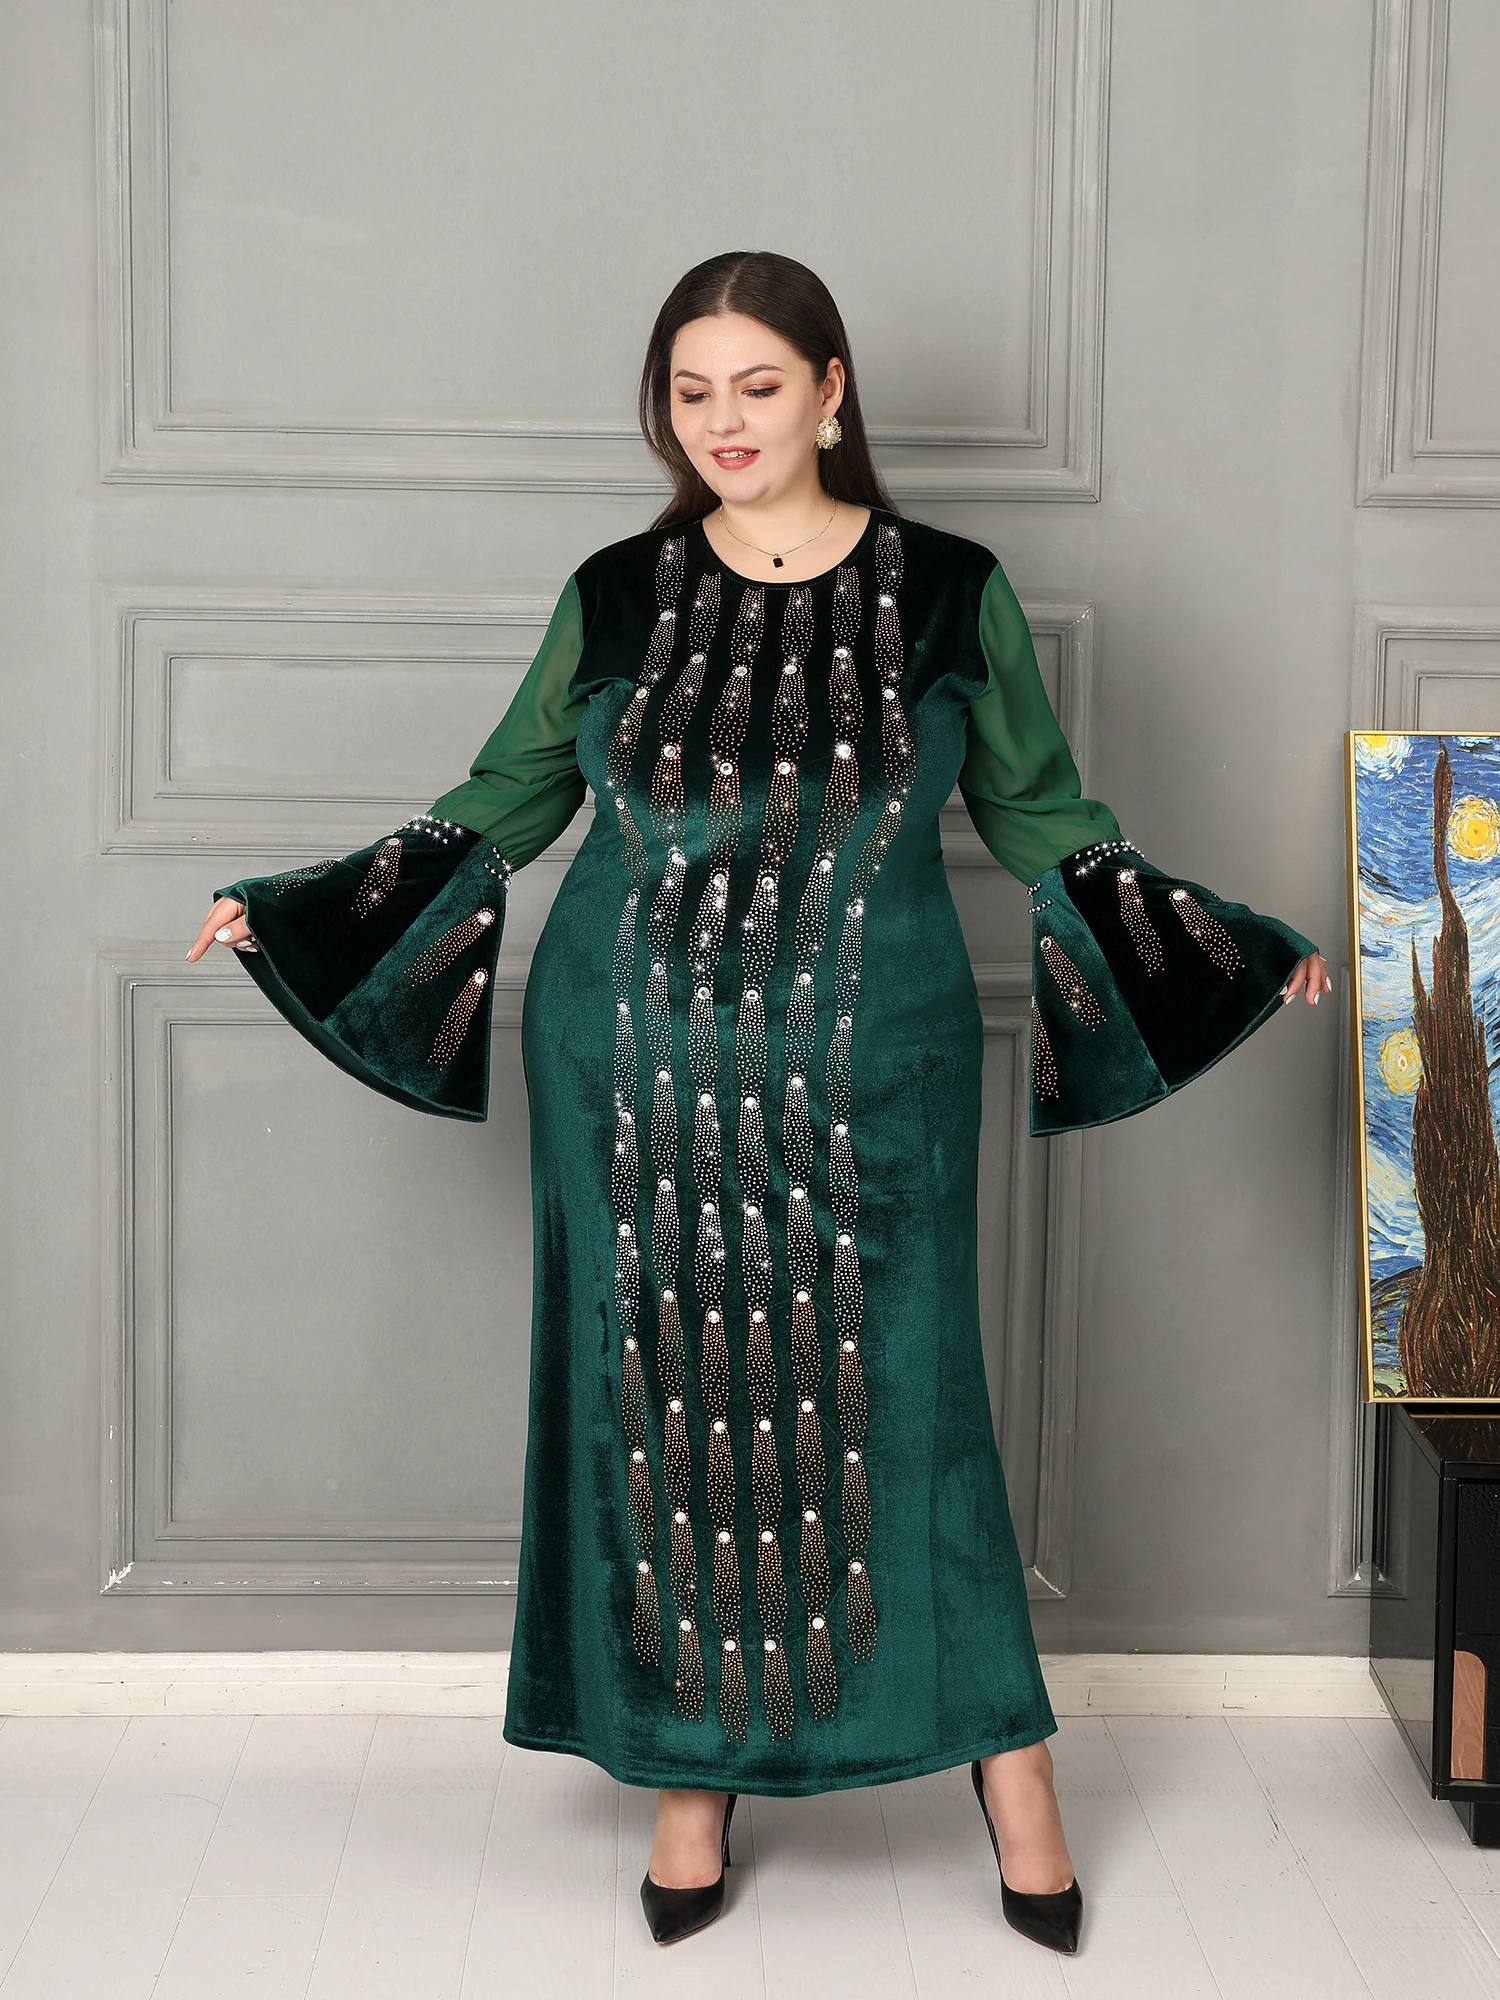 женская одежда турция платье женское вечернее мусульманская одежда Новинка 2021, зеленое мусульманское платье стразы, платье на день рождени...